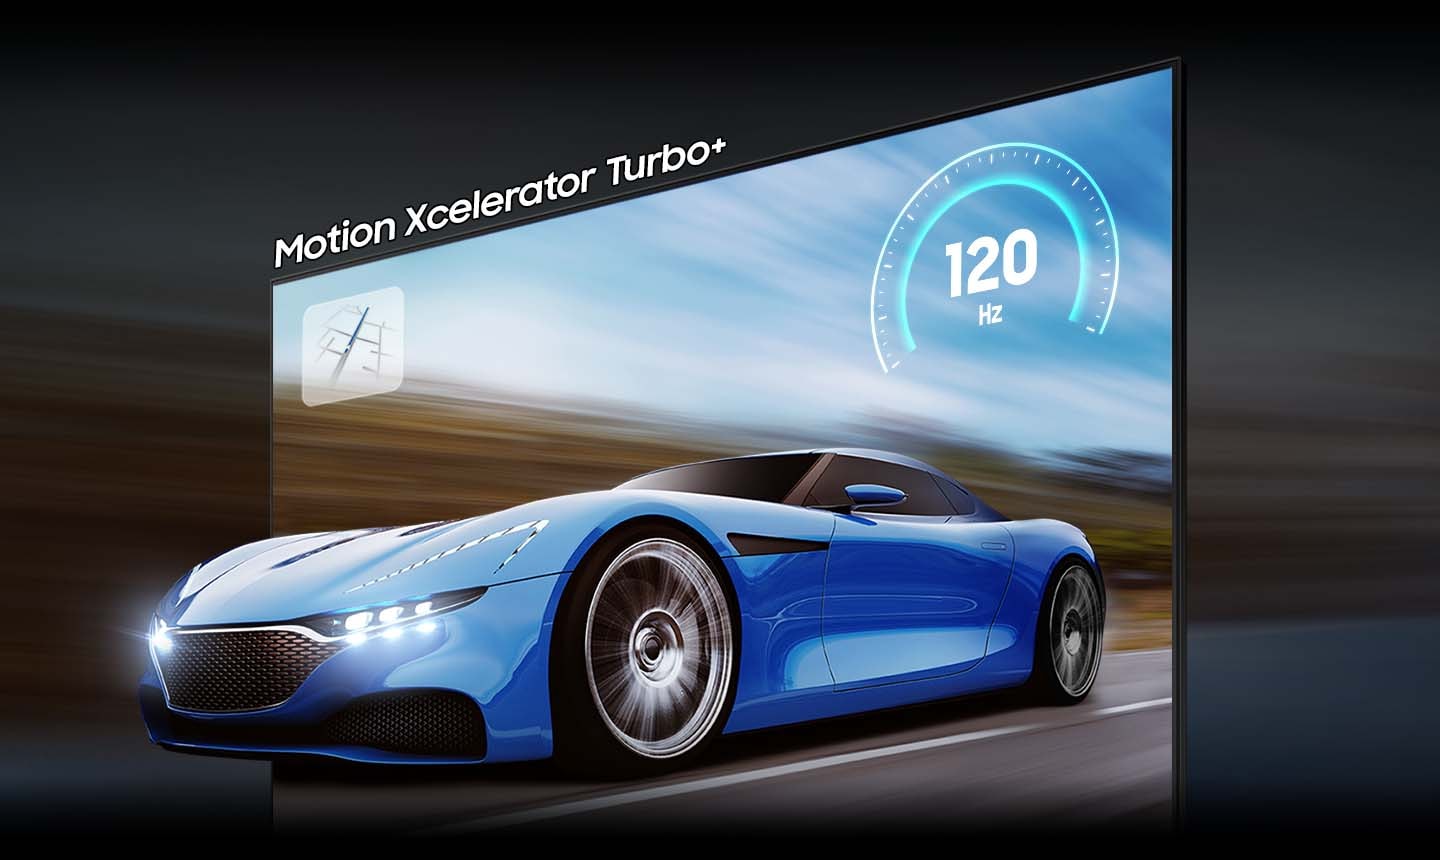 Modri ??avto na TV-zaslonu je zaradi tehnologije motion xcelerator turbo+ na QLED TV-ju videti jasnejši in bolj viden kot na običajnem TV-ju. Na zaslonu je 120Hz.